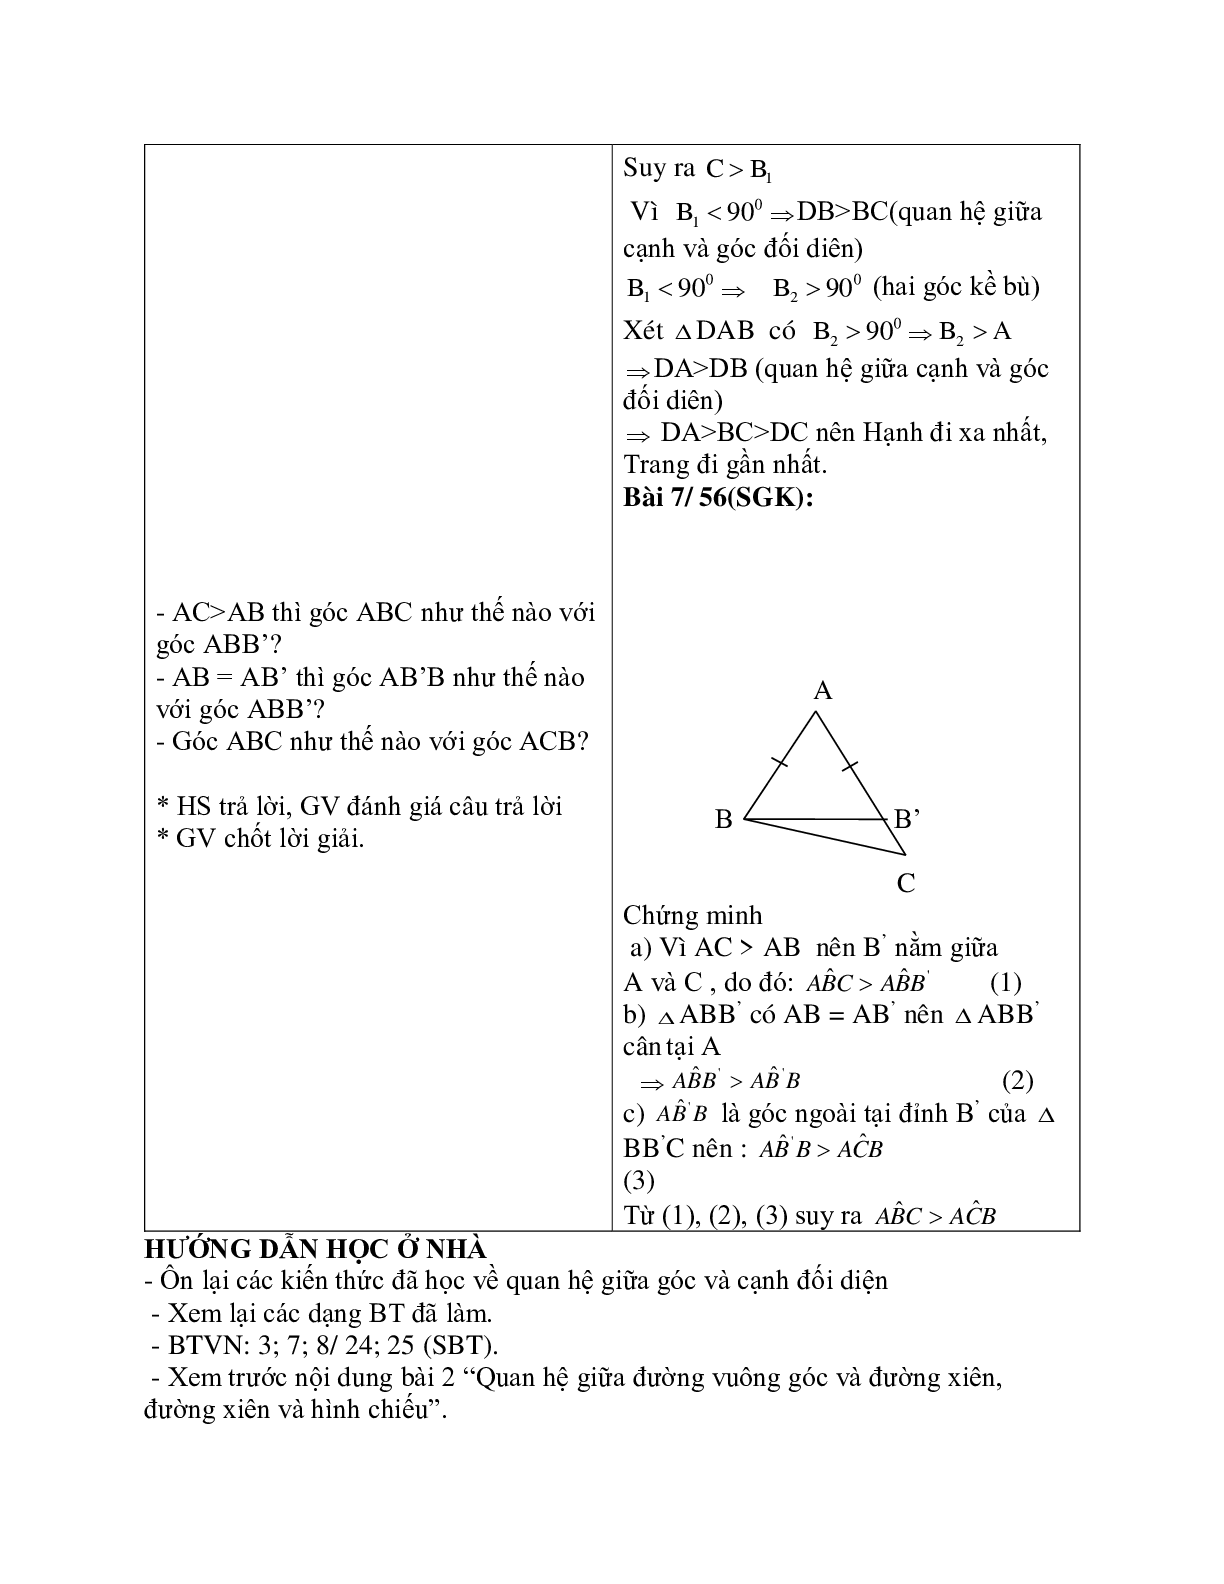 Giáo án Toán học 7 bài 1: Quan hệ giữa góc và cạnh đối diện trong một tam giác chuẩn nhất (trang 4)